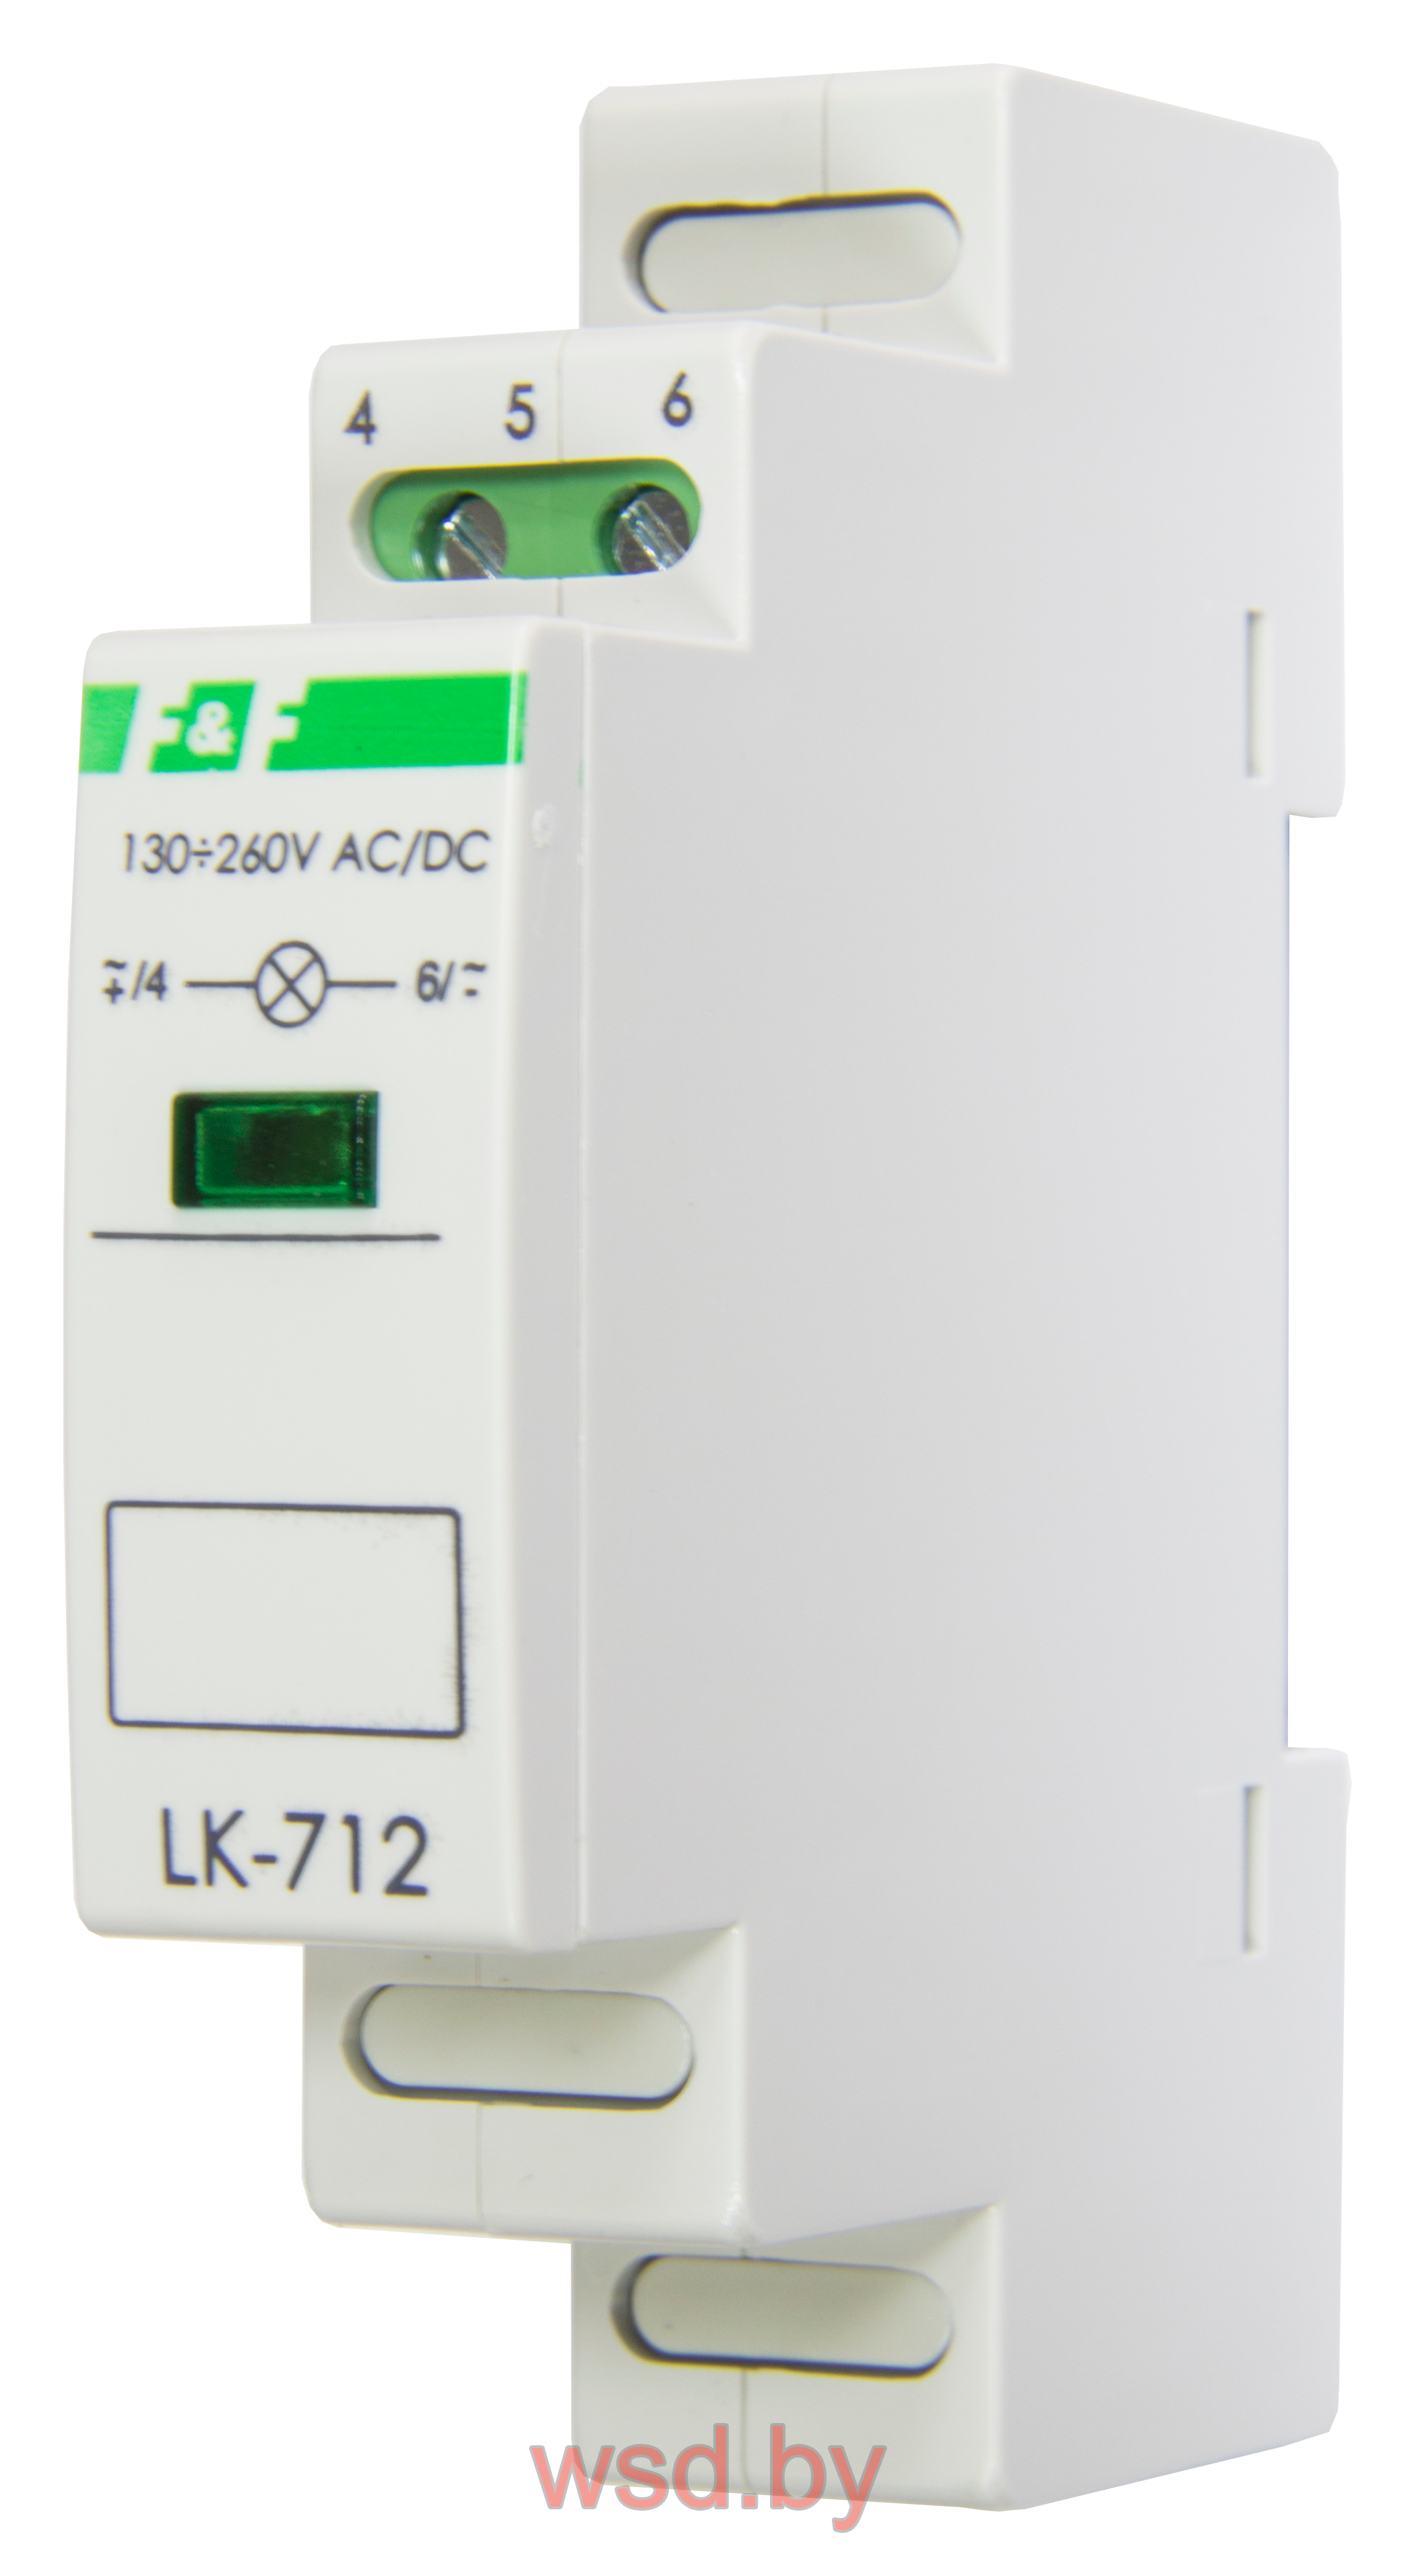 Указатель напряжения LK-712-G-2 сигнализация наличия одной фазы, цвет ЗЕЛЁНЫЙ, 1 модуль, монтаж на DIN-рейке 10-30 В AC/DC IP20